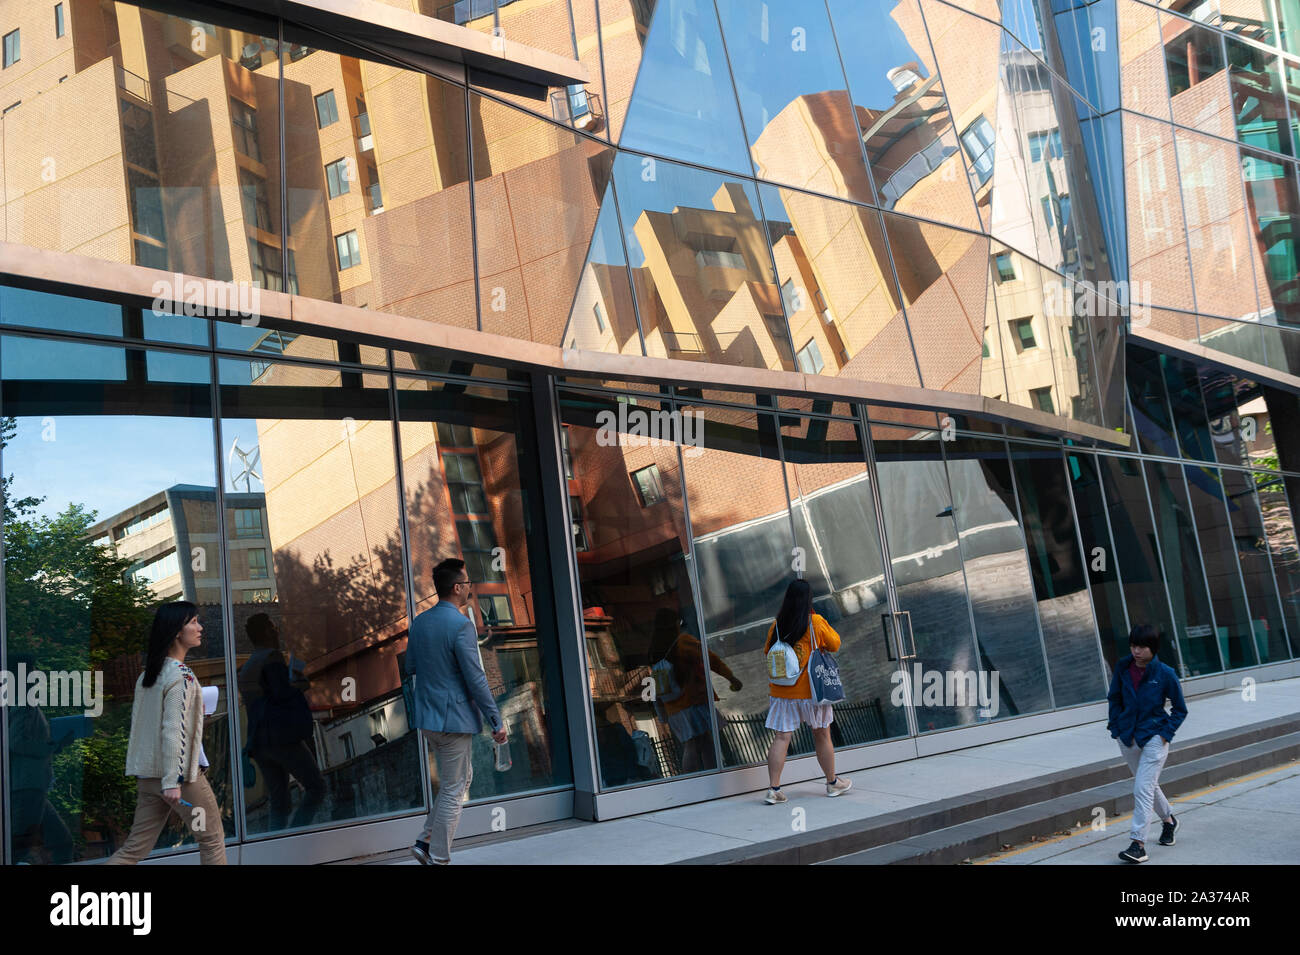 26.09.2019, Sydney, Nouvelle-Galles du Sud, Australie - Dr Chau Chak Wing bâtiment qui abrite la Business School de l'Université de technologie UTS. Banque D'Images